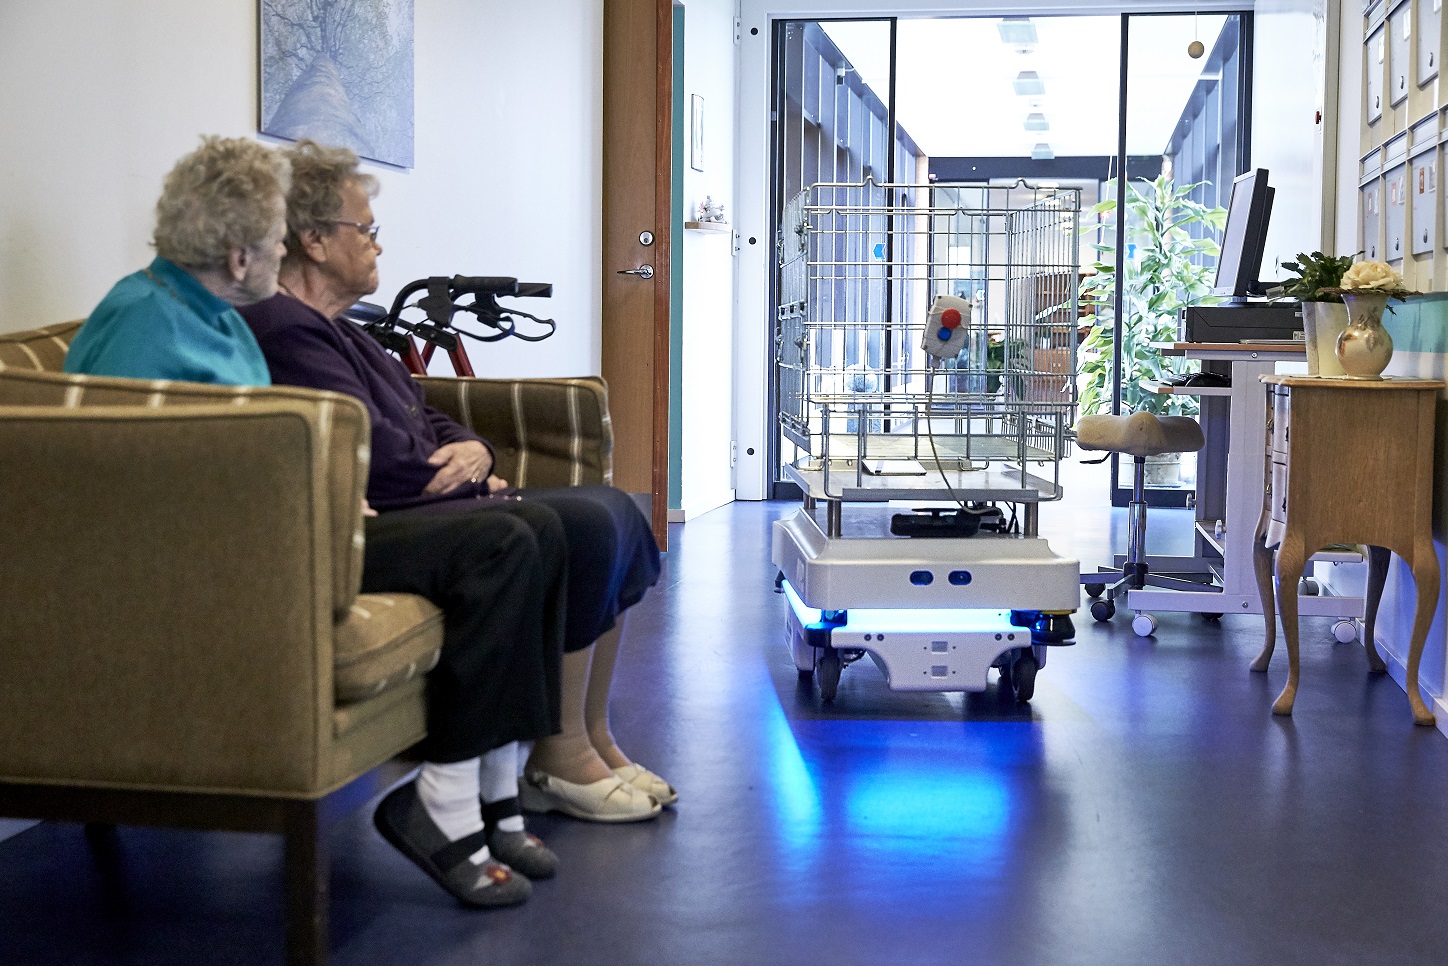 MiR-robot sendt plejehjem